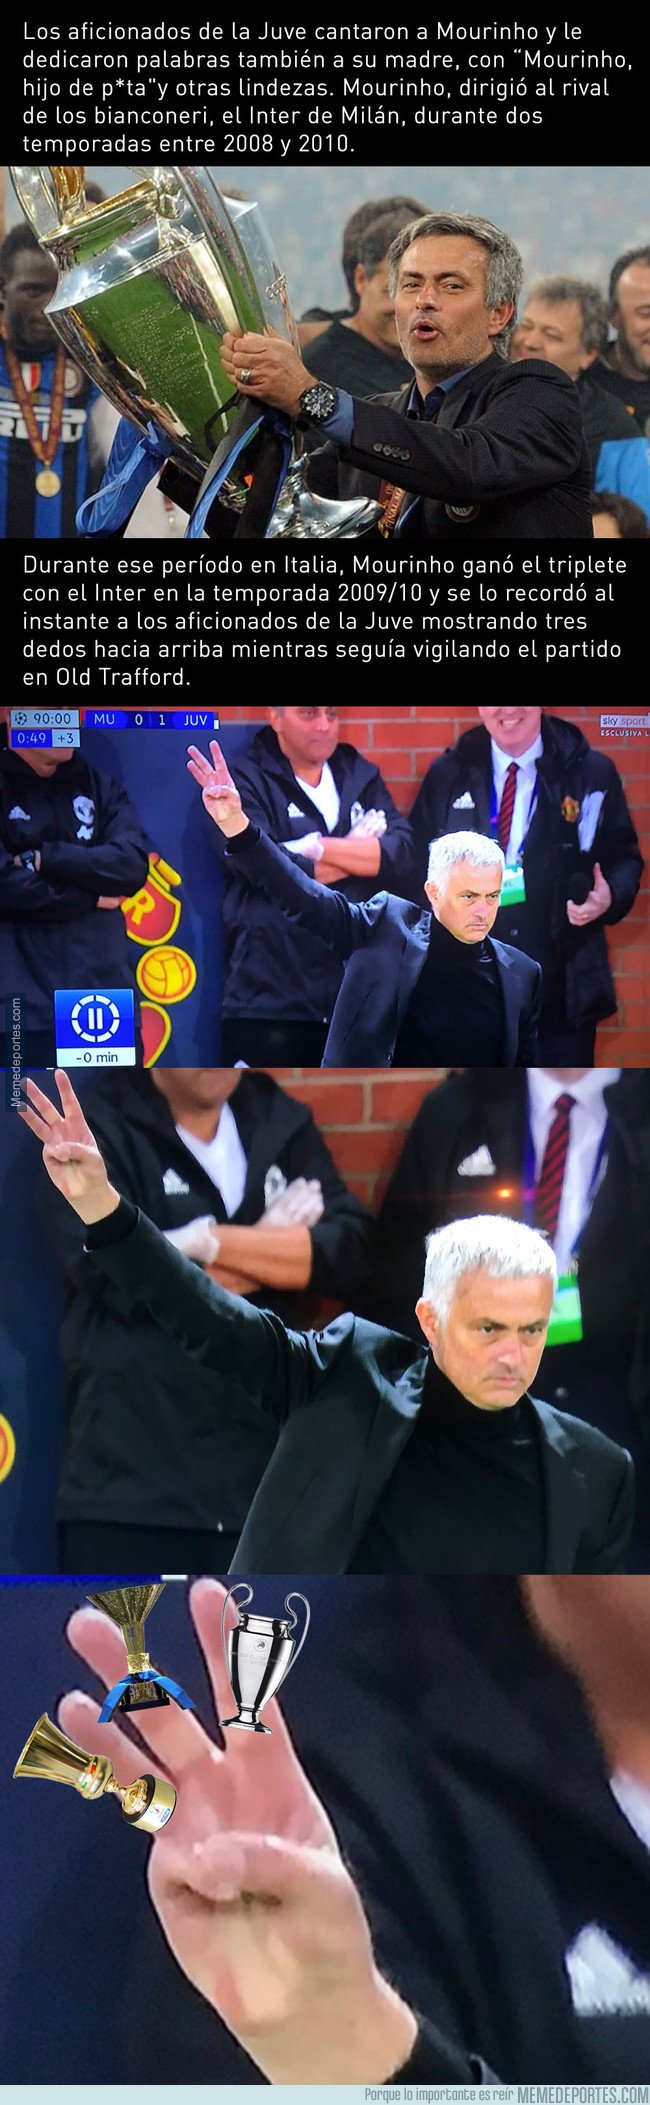 1054086 - El motivo por el que Mourinho levantó tres dedos a los fans de la Juve que lo insultaron sin piedad